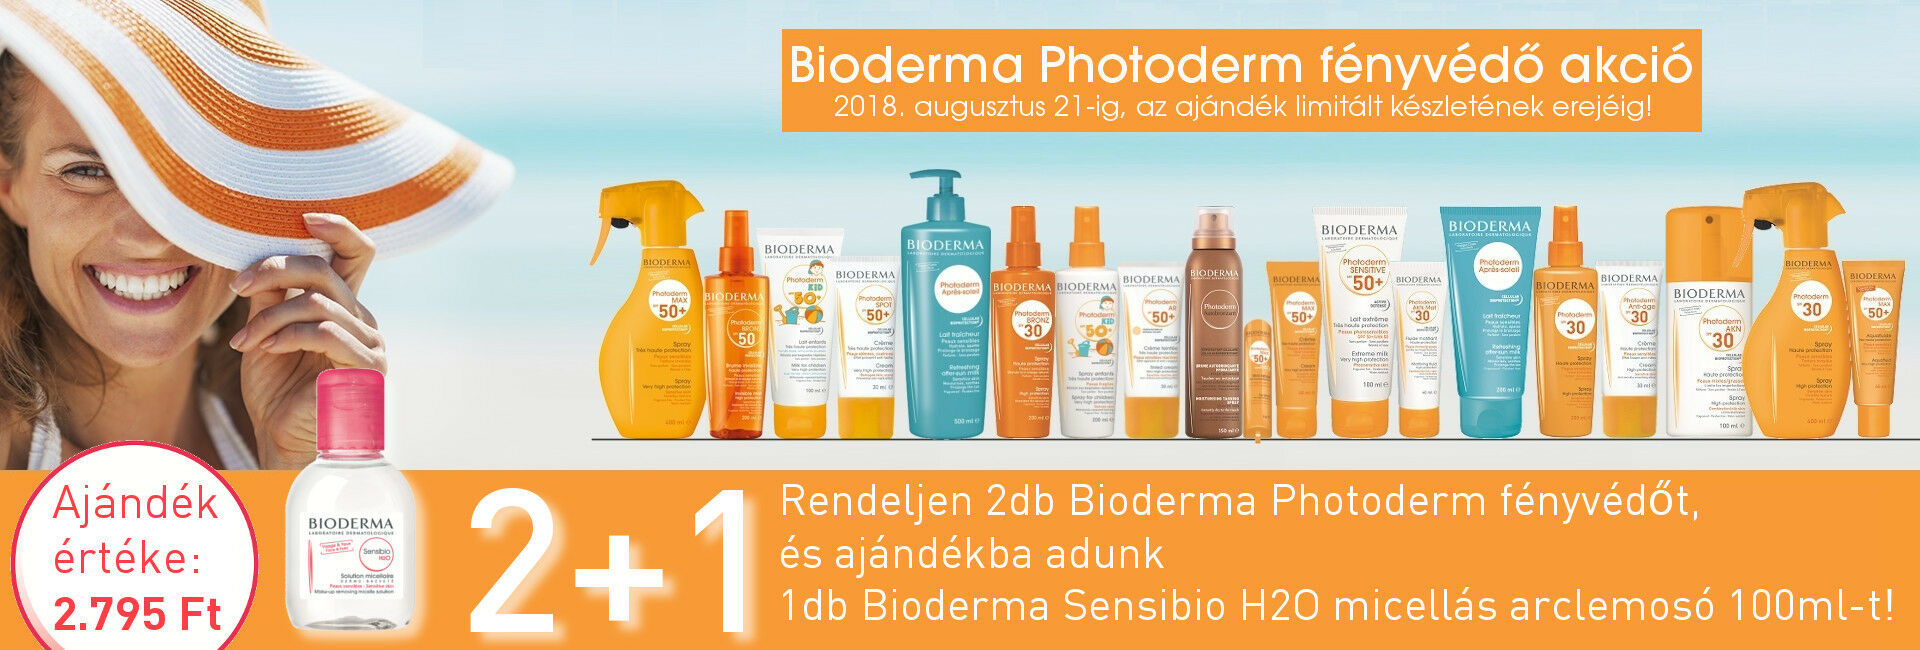 Szülinapi Photoderm Akció - 2db Bioderma Photoderm termék mellé ajándék Bioderma Sensibio H2O 100ml